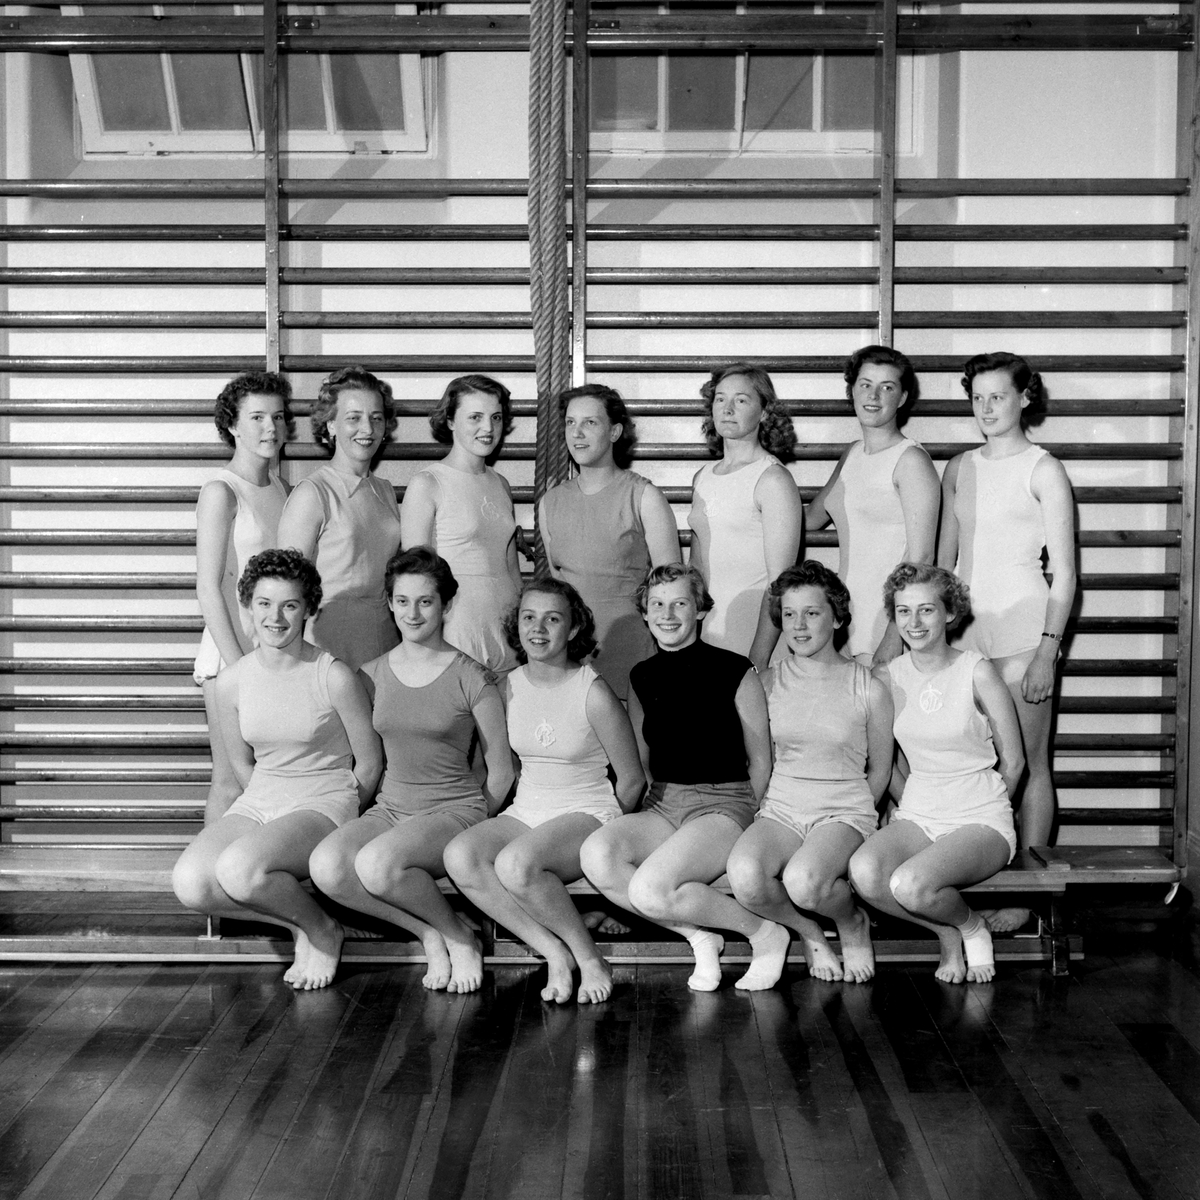 Kvinnliga medlemmar i ABF:s Gymnastikförening 1953. Platsen har inte lokaliserats men sannolikt gymnastiksal i någon av Linköpings skolor.